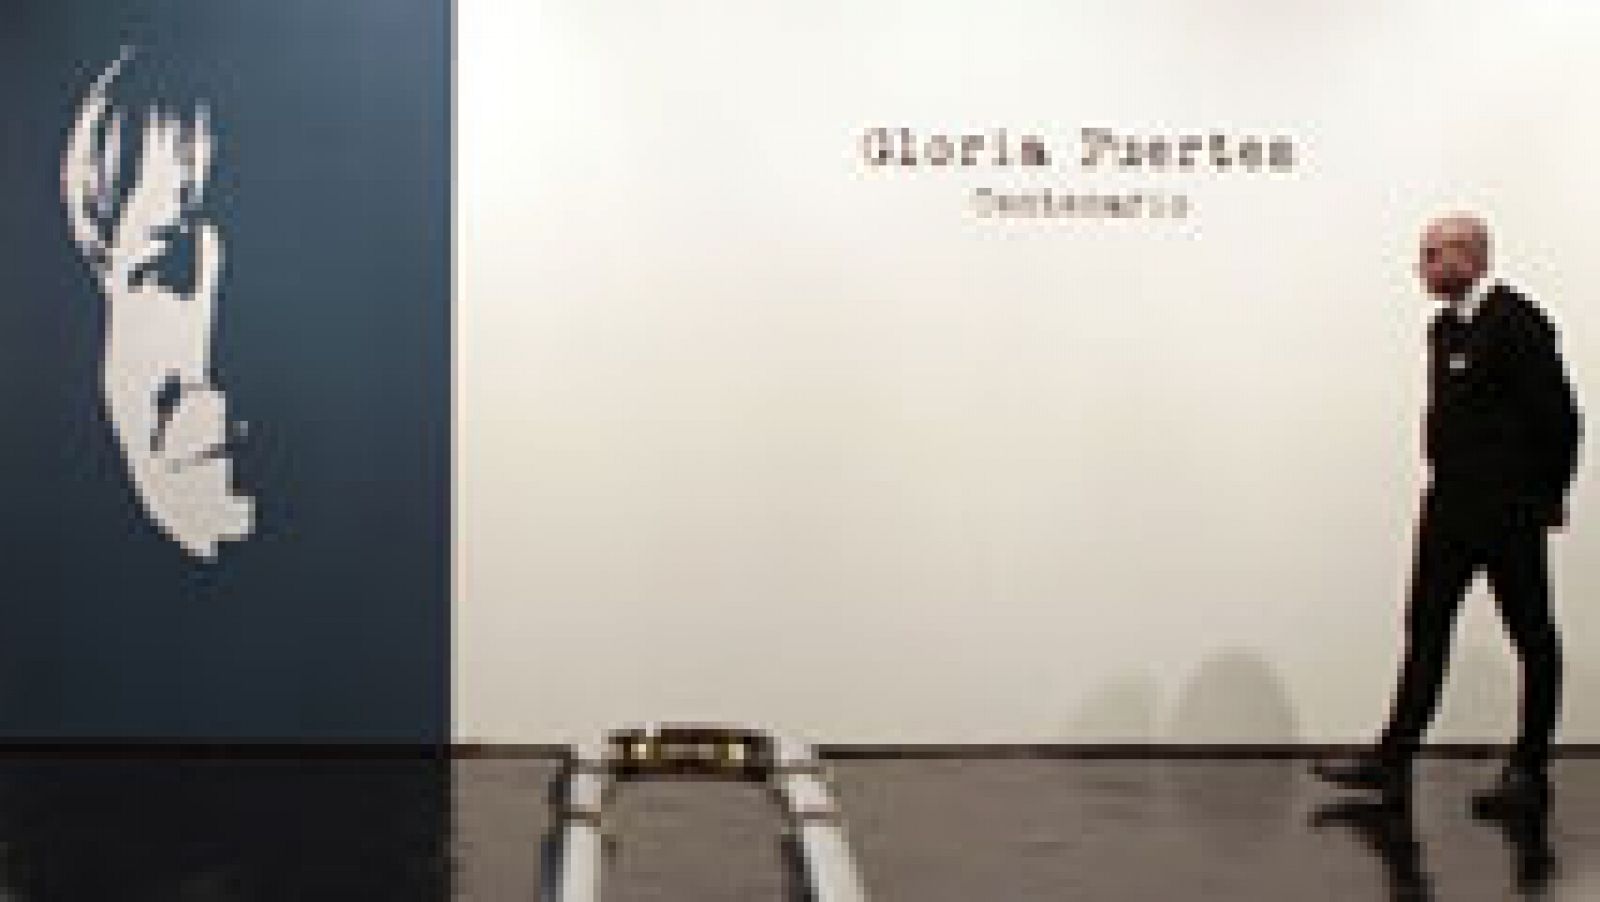 Telediario 1: Gloria Fuertes vuelve cargada de ironía, en su centenario, con nuevas ediciones de su obra y una exposición en Madrid | RTVE Play